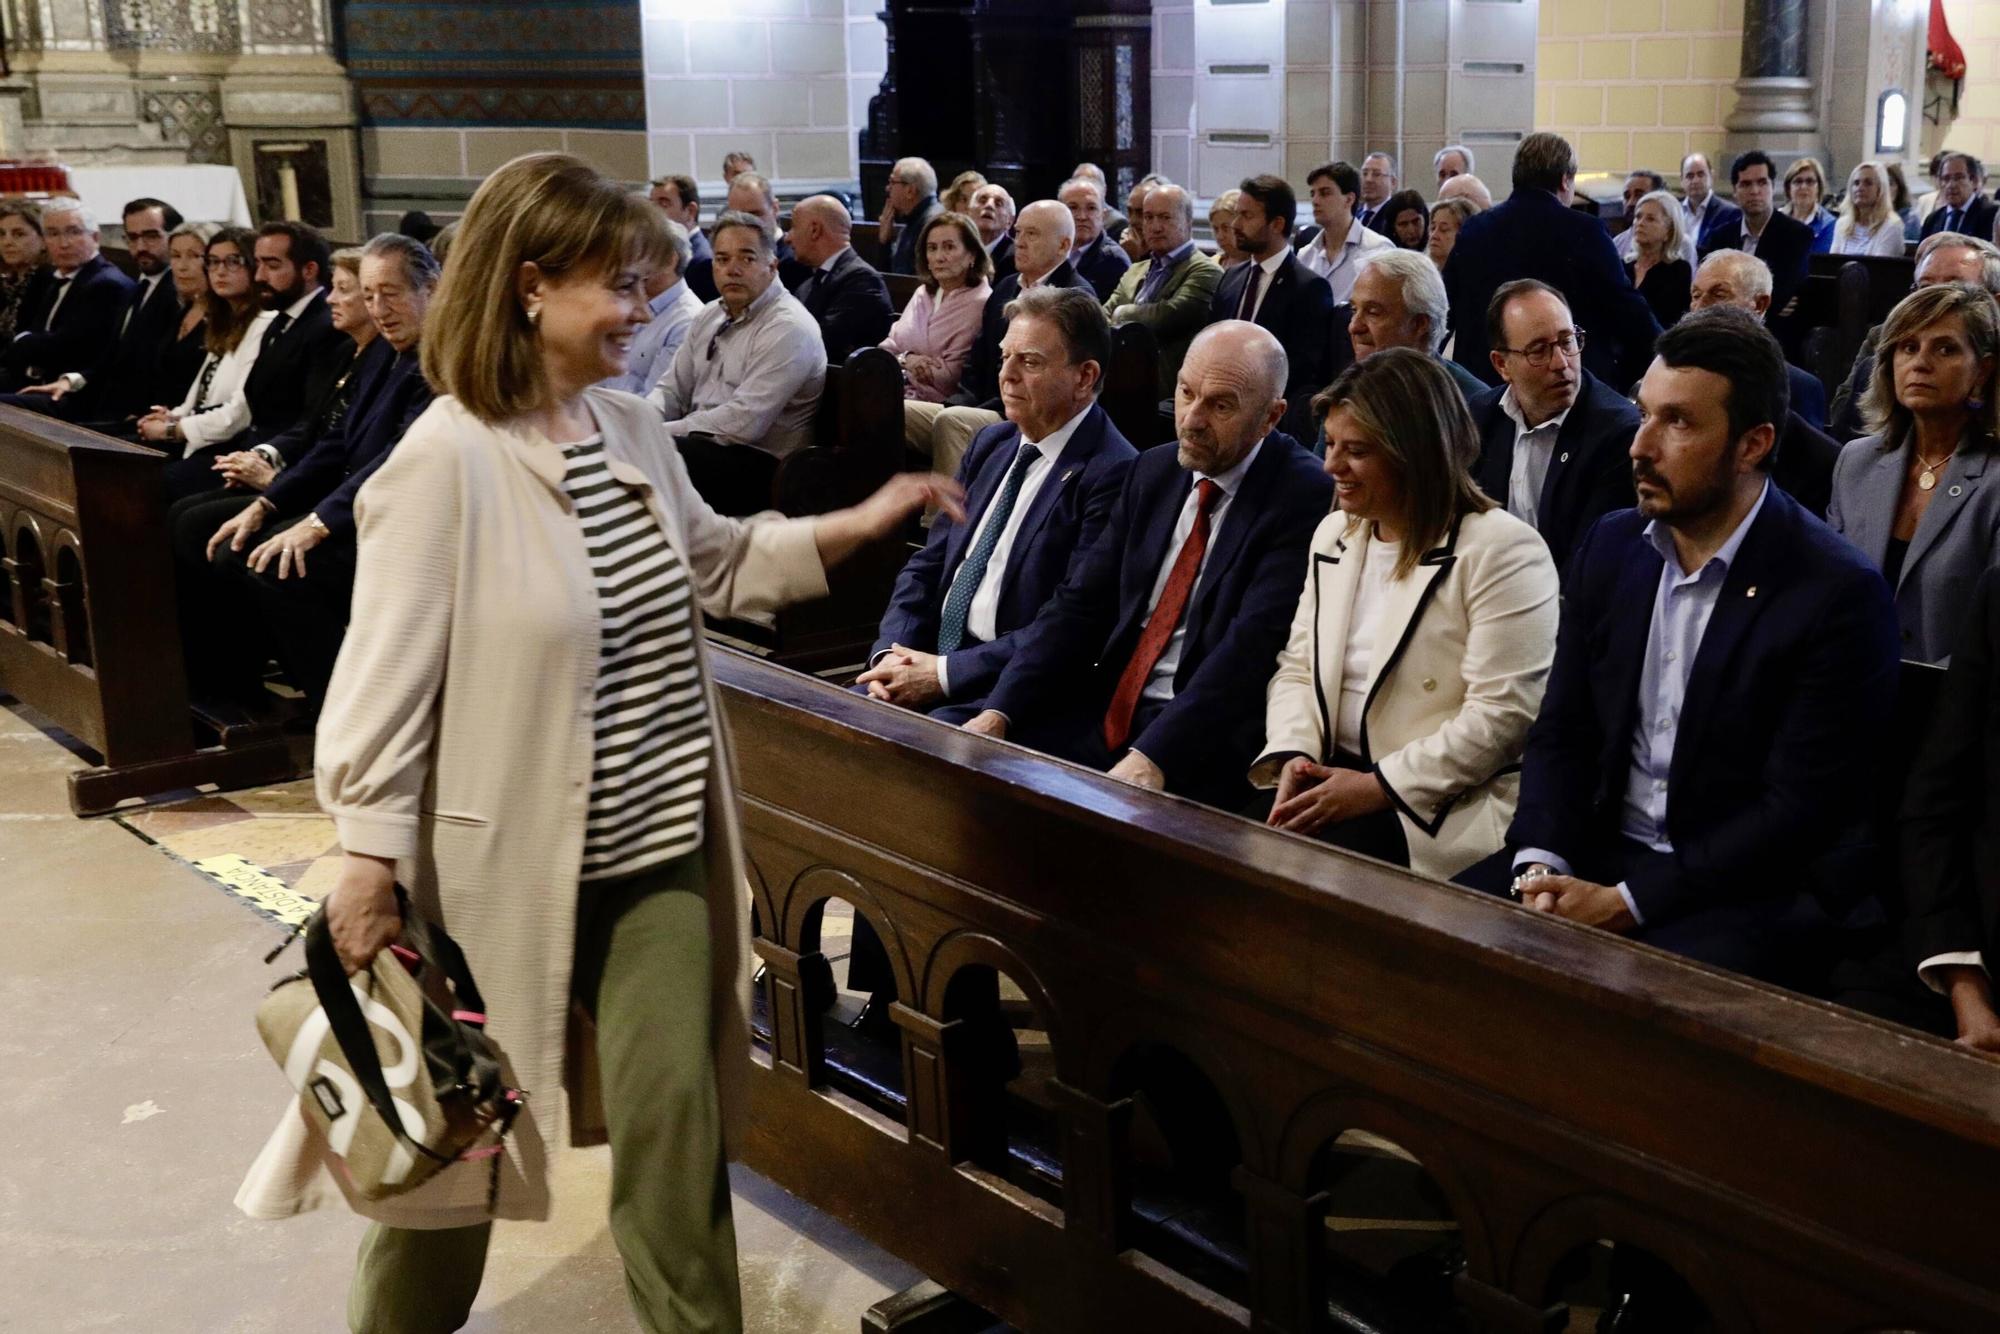 EN IMÁGENES: Misa funeral en Oviedo por Carlos Rodríguez de la Torre